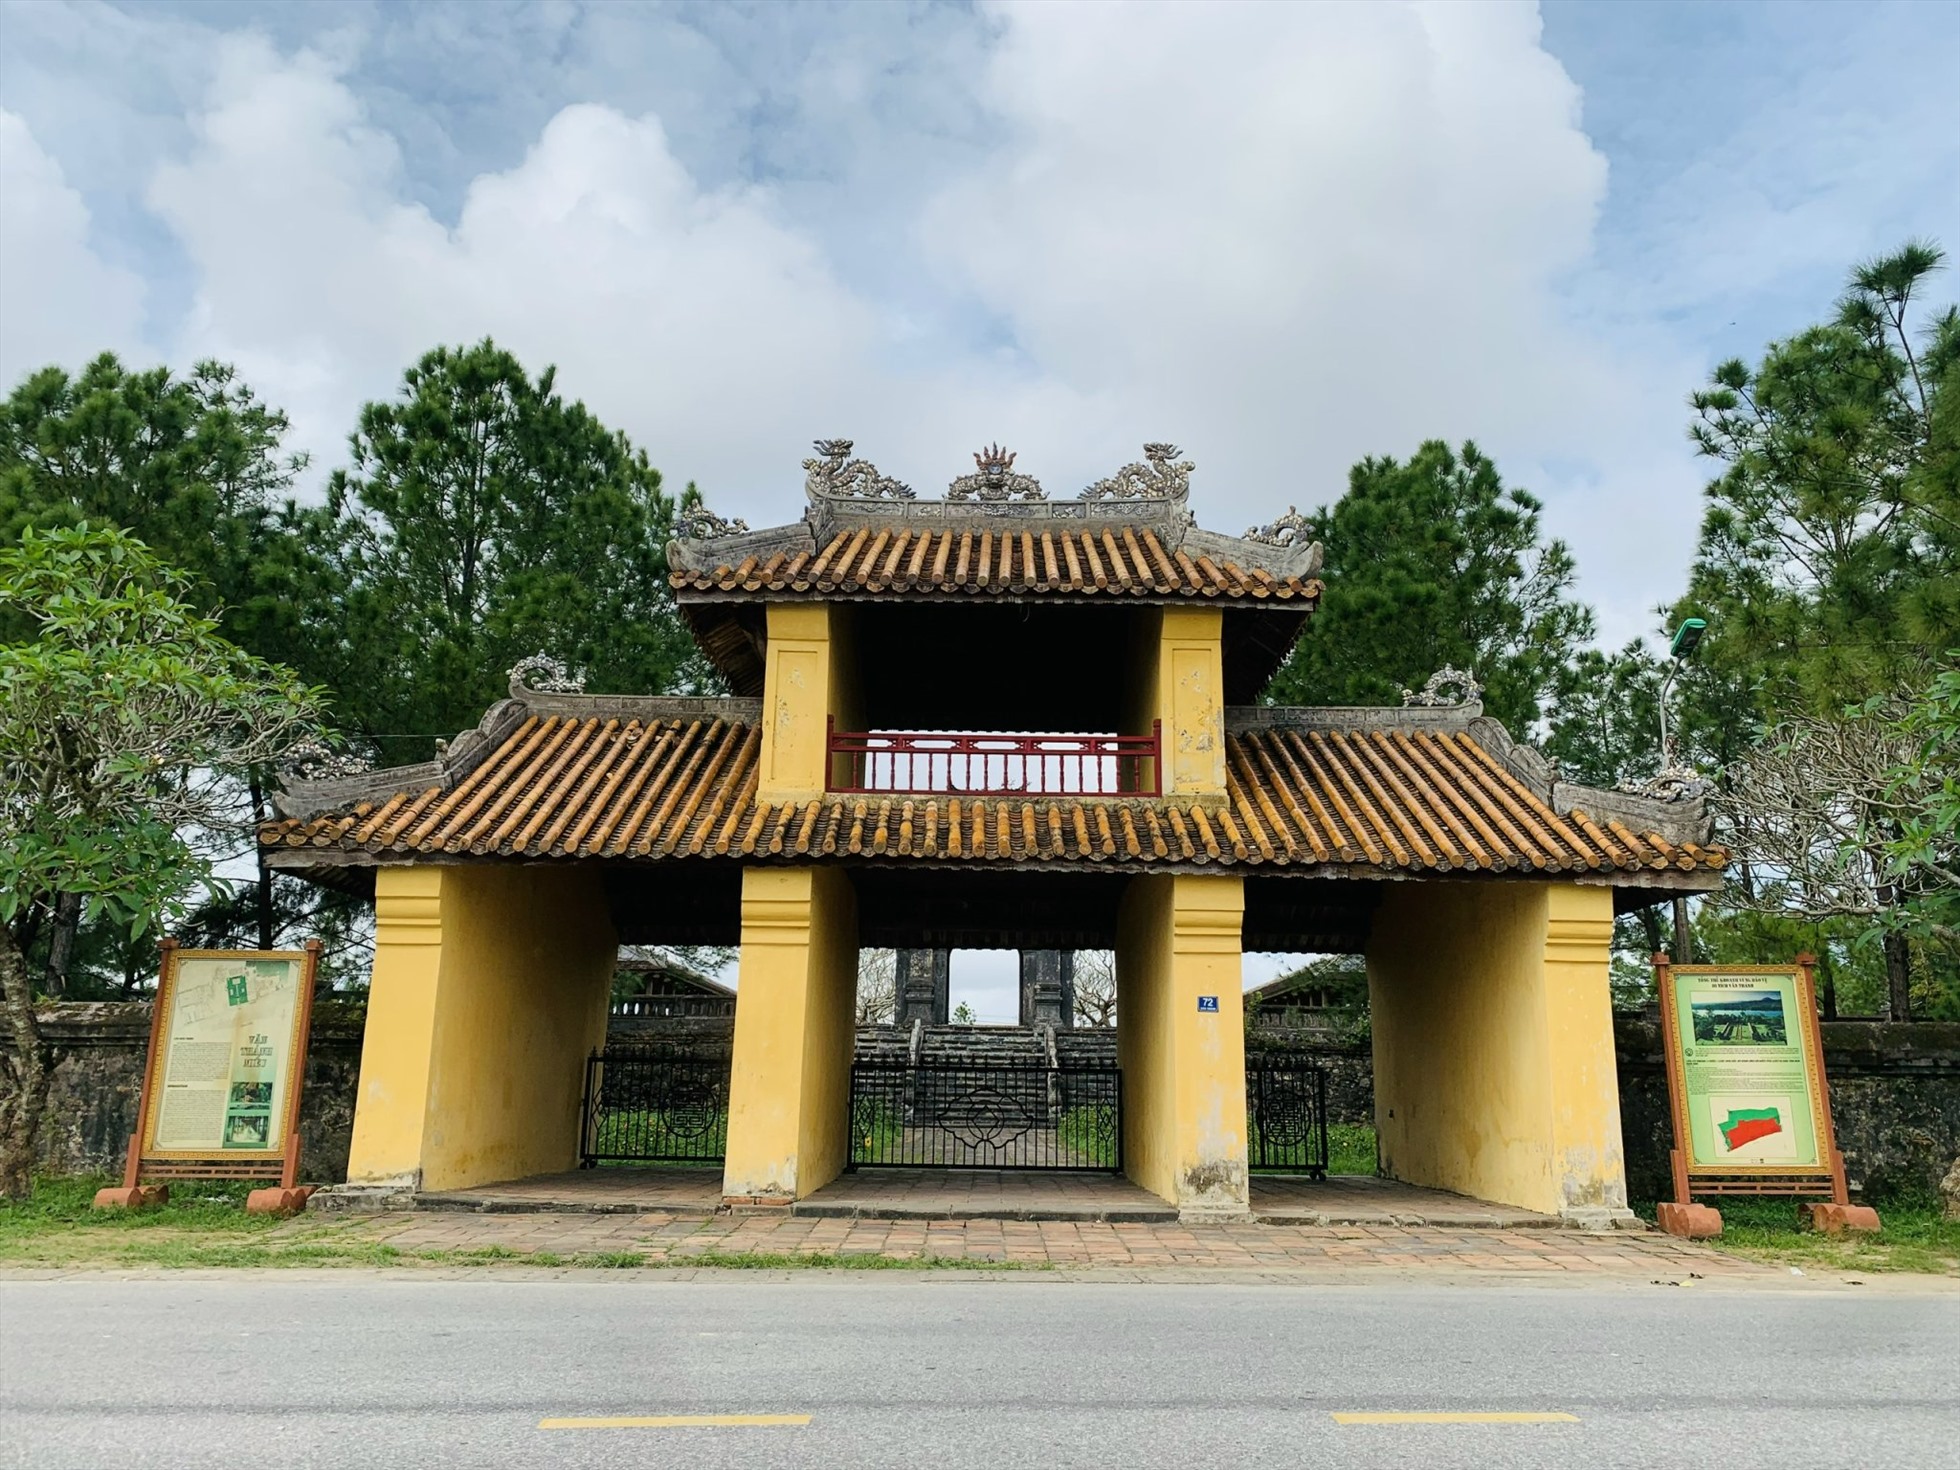 Di tích Văn Miếu Huế nằm tại số 72, đường Văn Thánh, thuộc phường Hương Hồ, thành phố Huế.